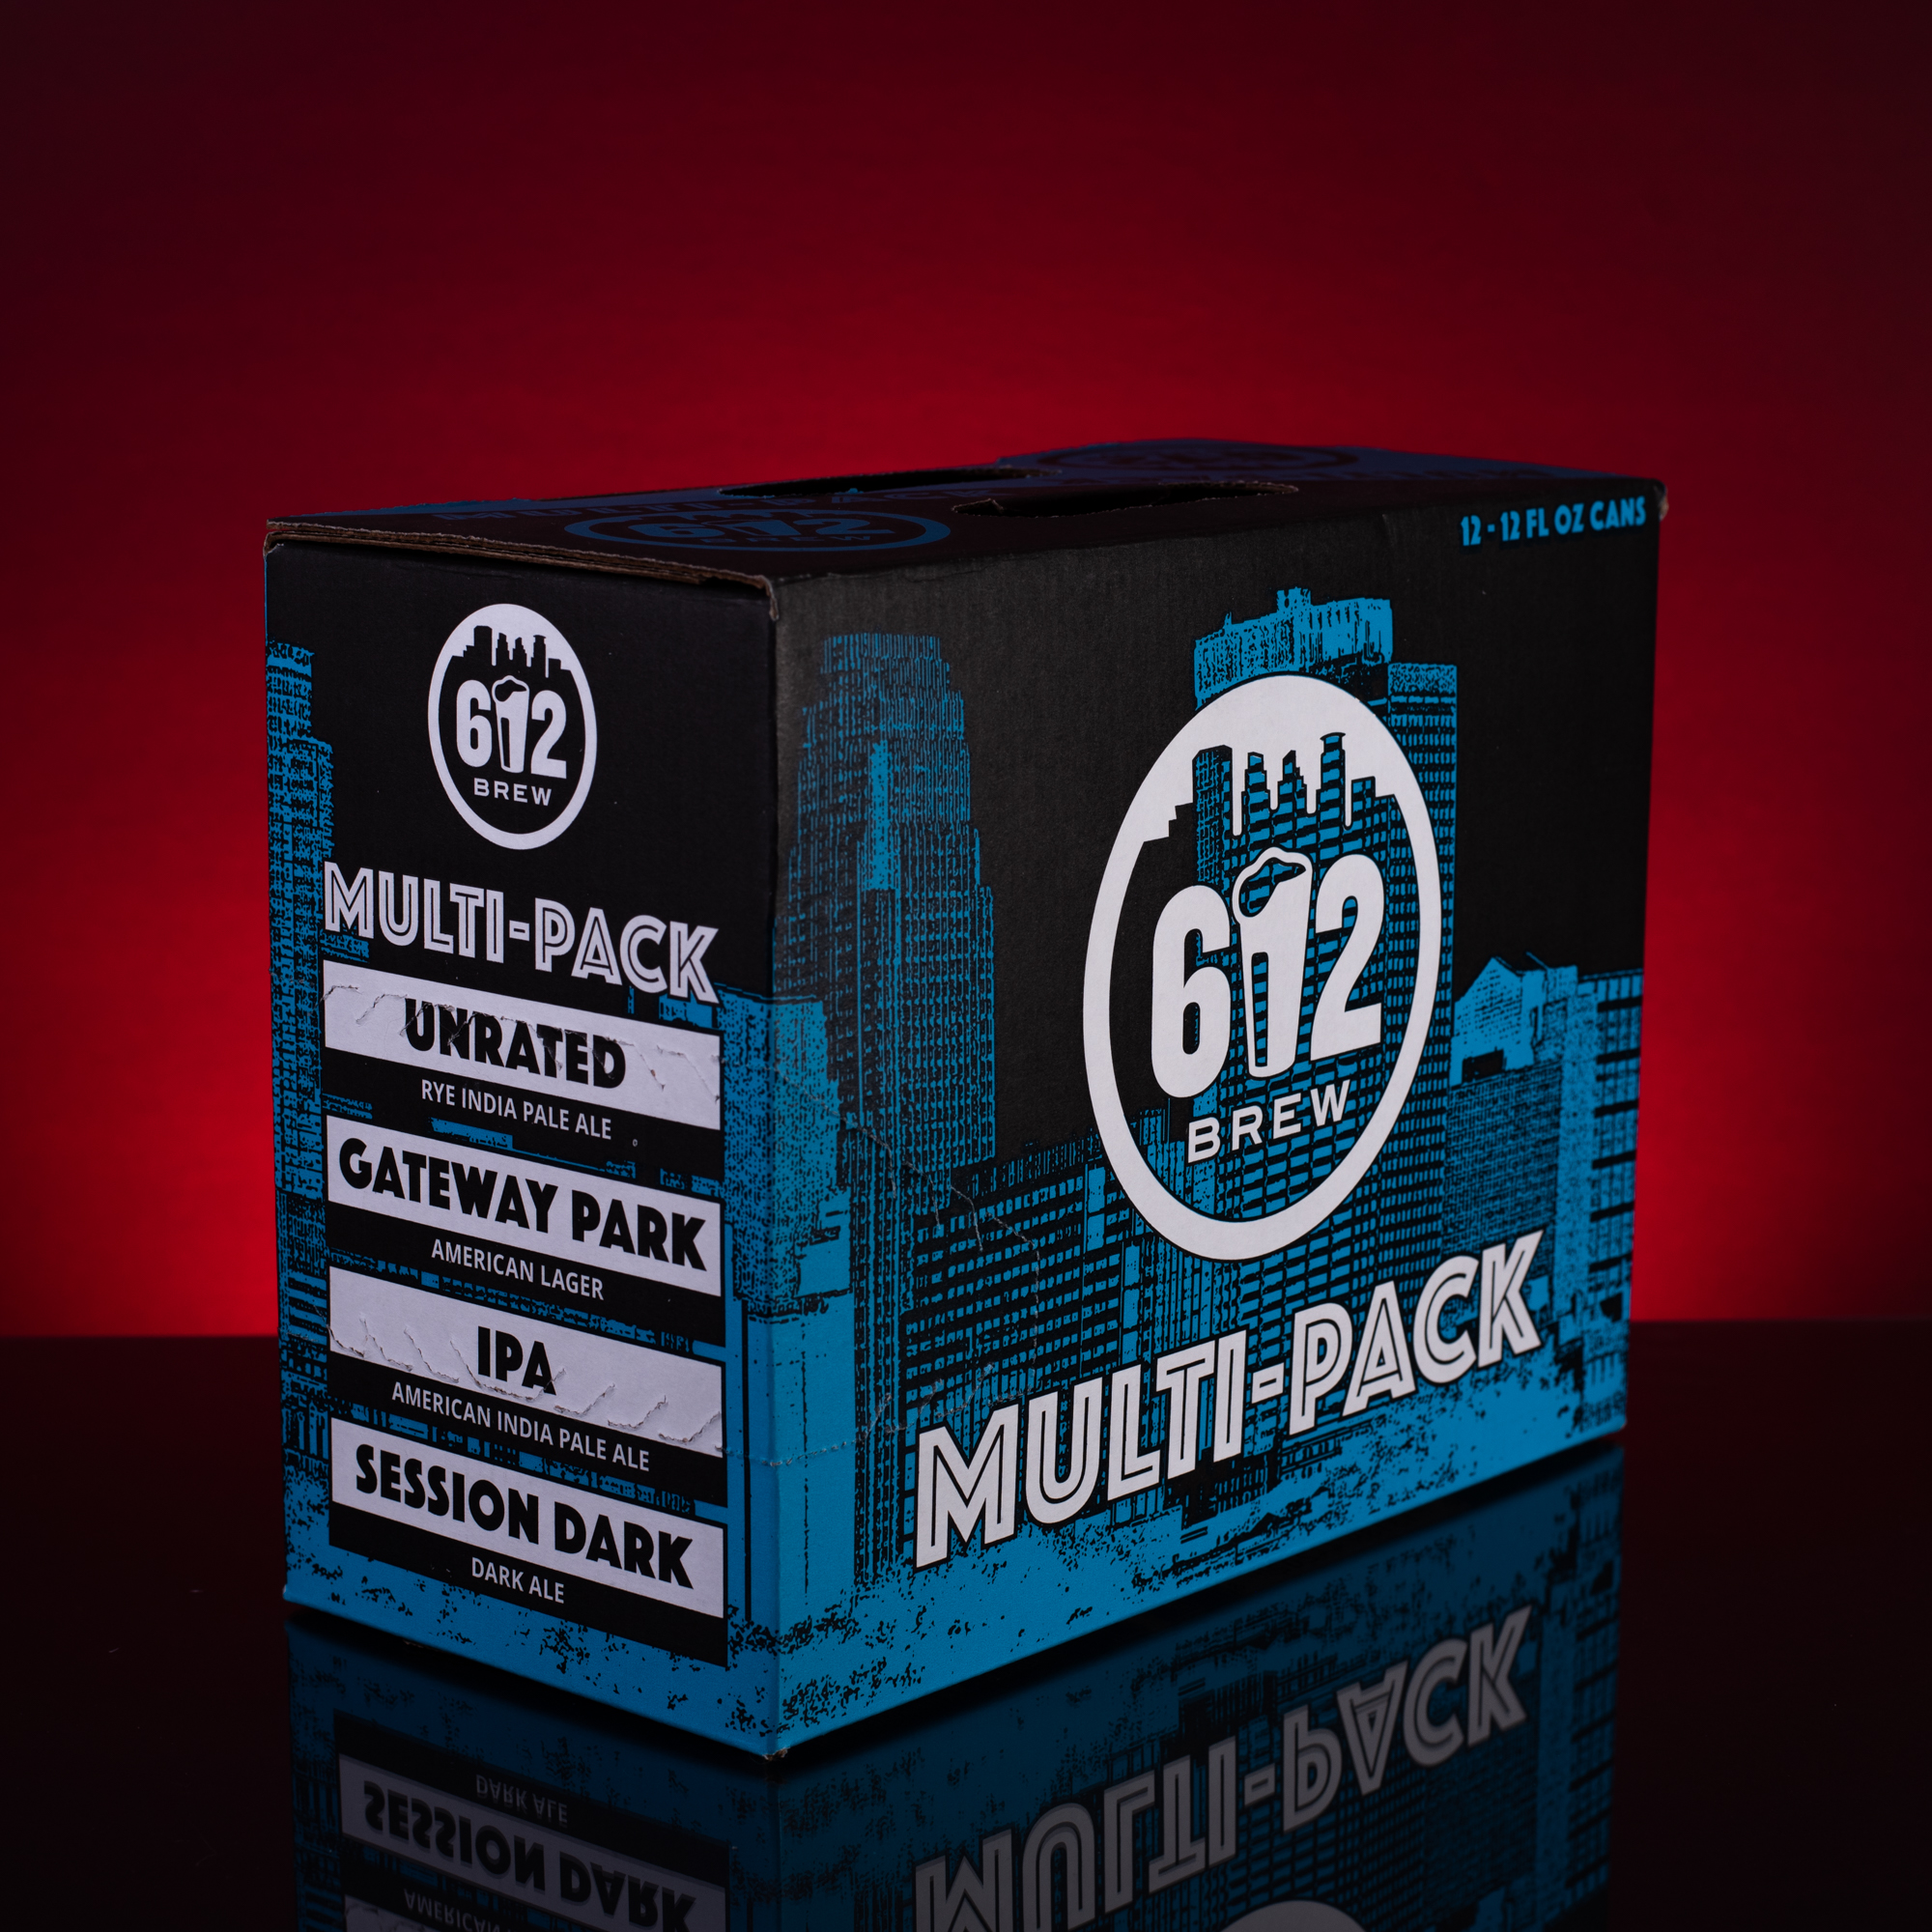 Multi-Pack (Copy)